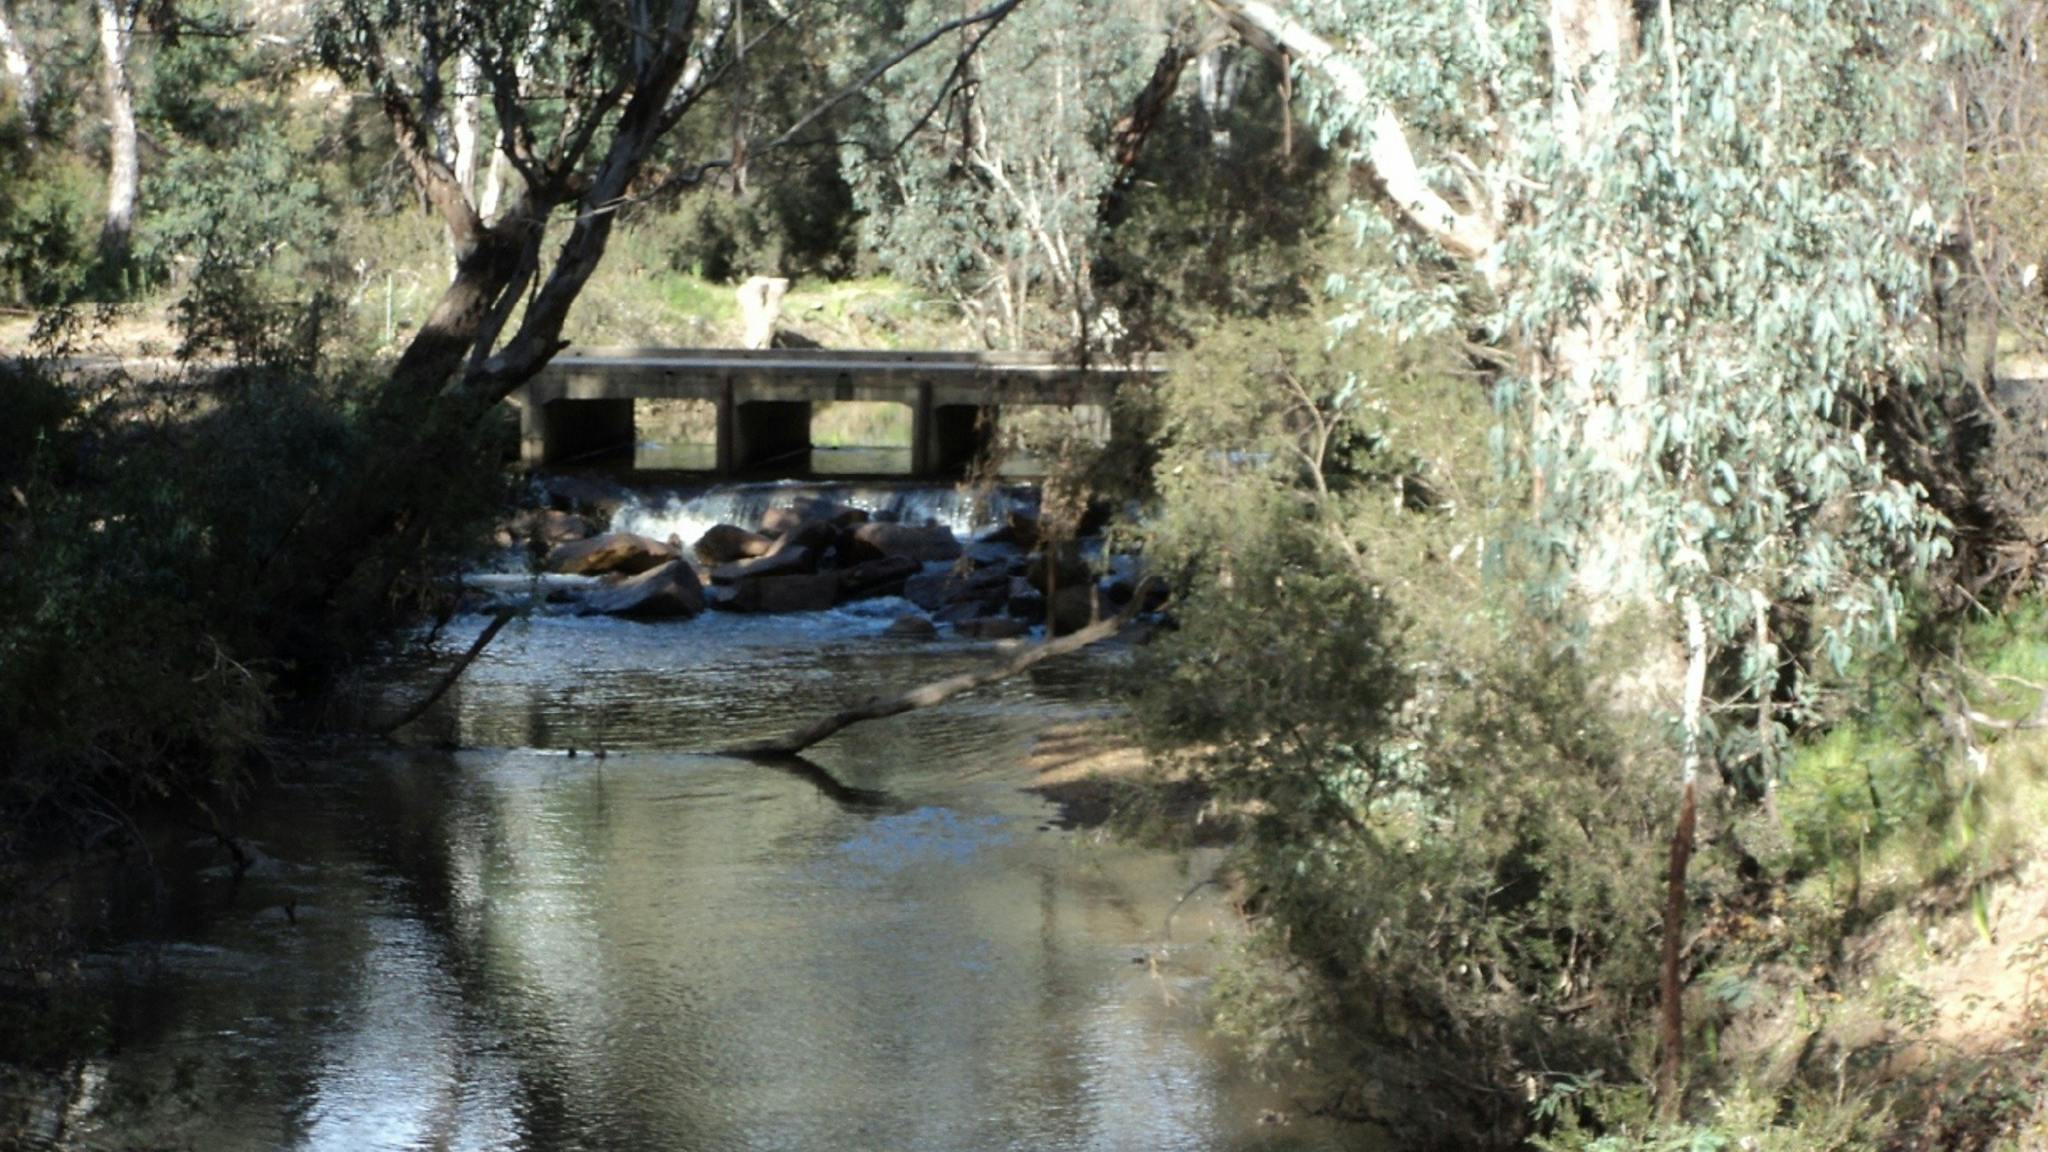 creek,  branch in creek, trees, bush, rocks, spillway, bridge